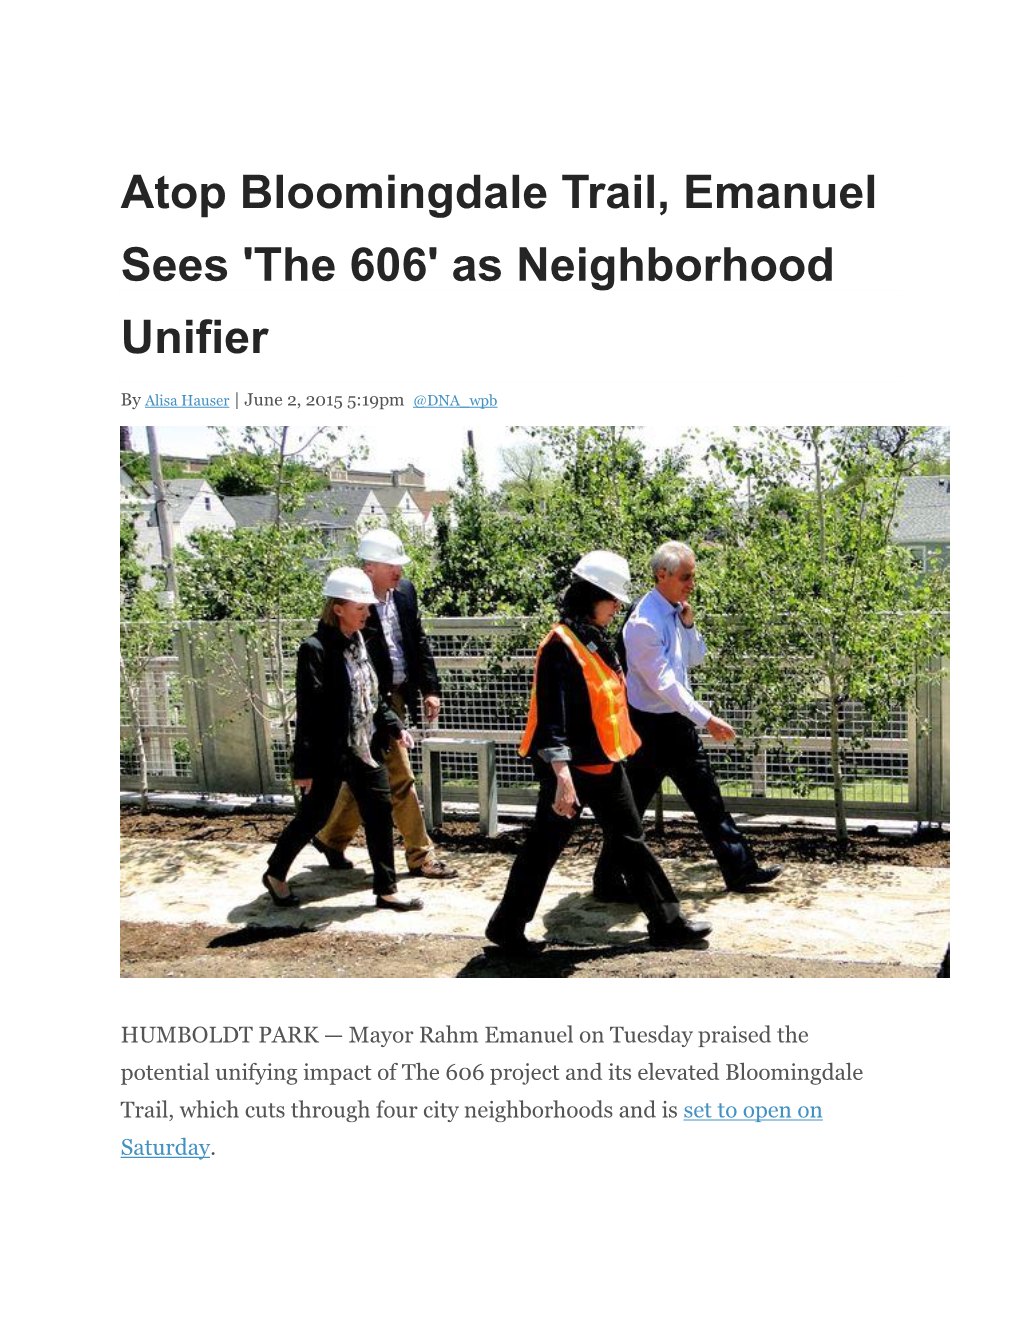 Atop Bloomingdale Trail, Emanuel Sees 'The 606' As Neighborhood Unifier